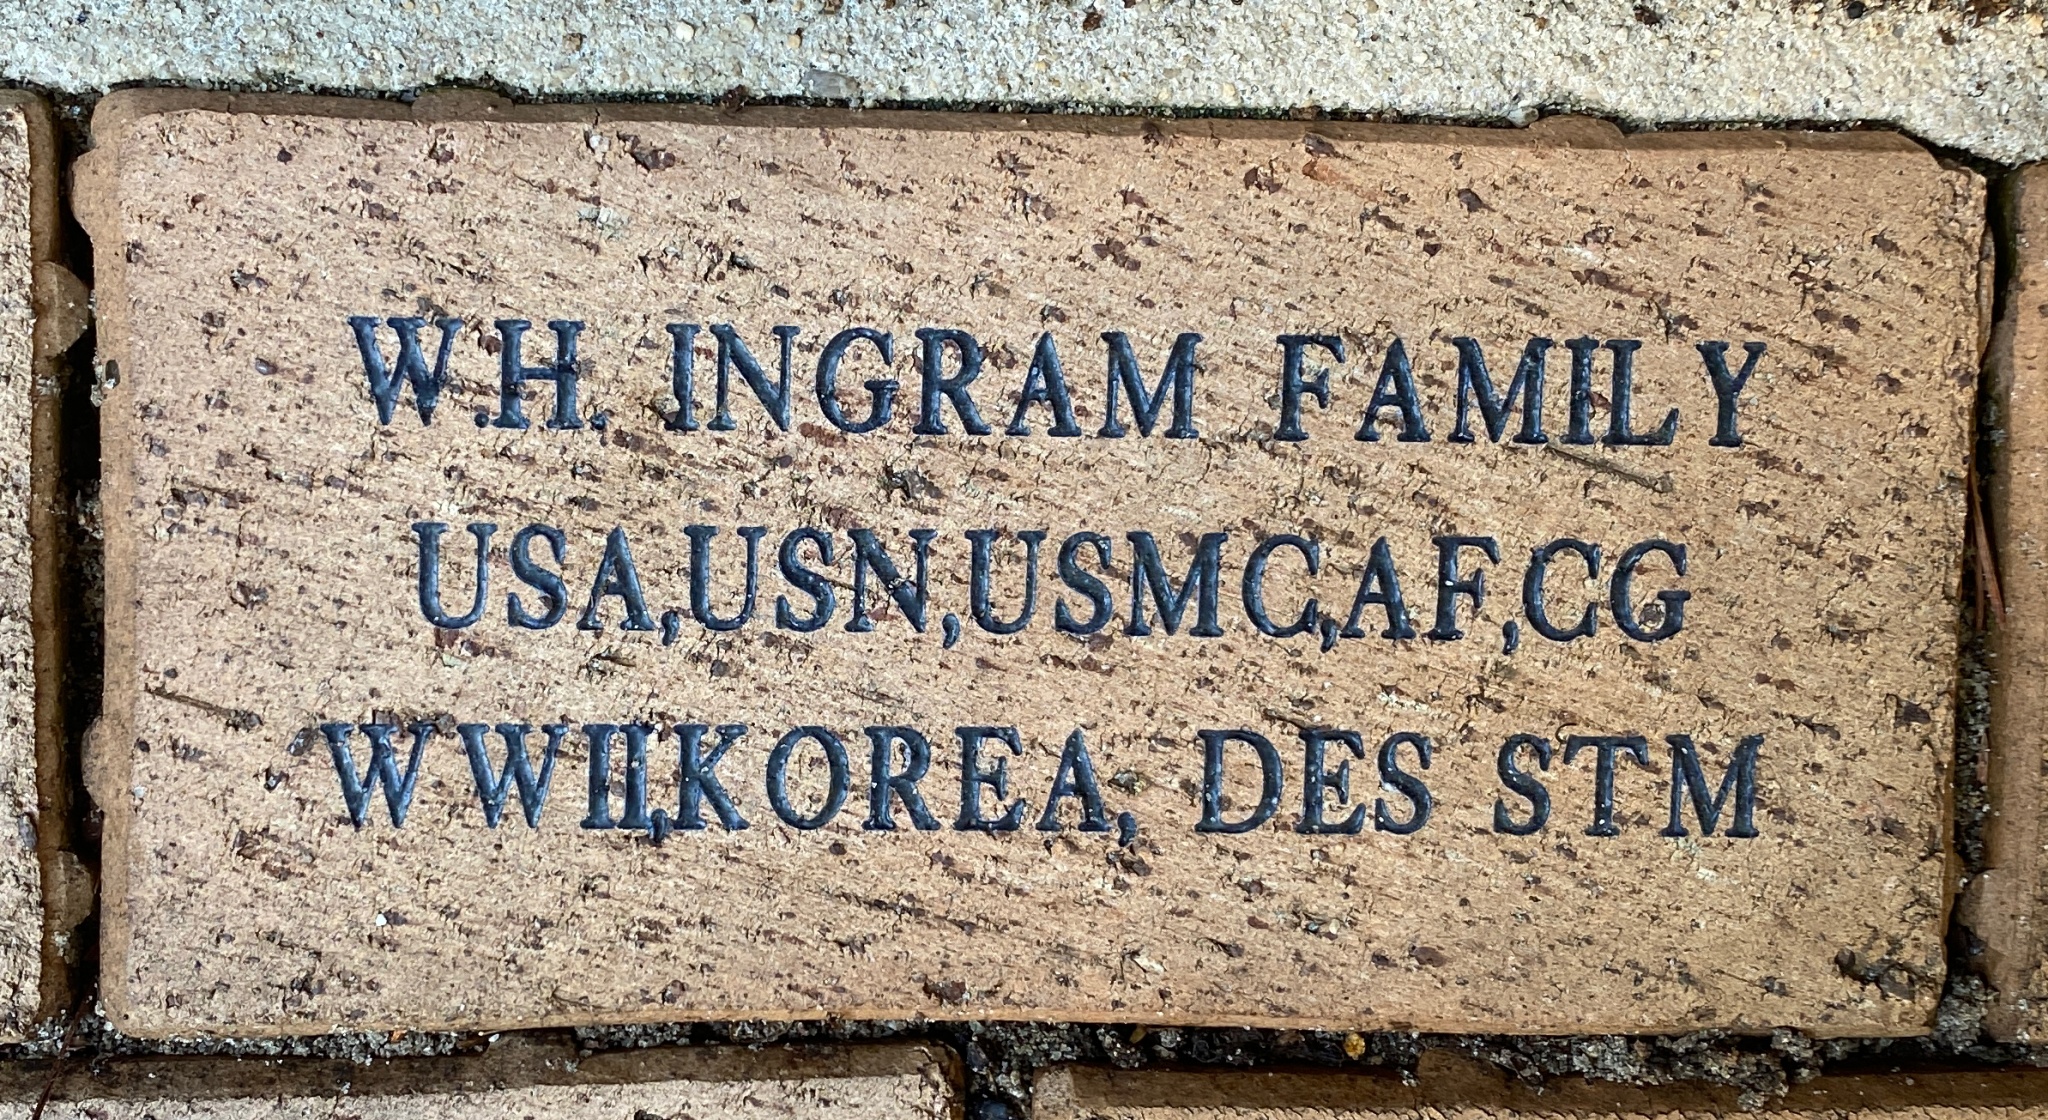 W.H. INGRAM FAMILY USA,USN,USMC,AF,CG WWII,KOREA, DES STM